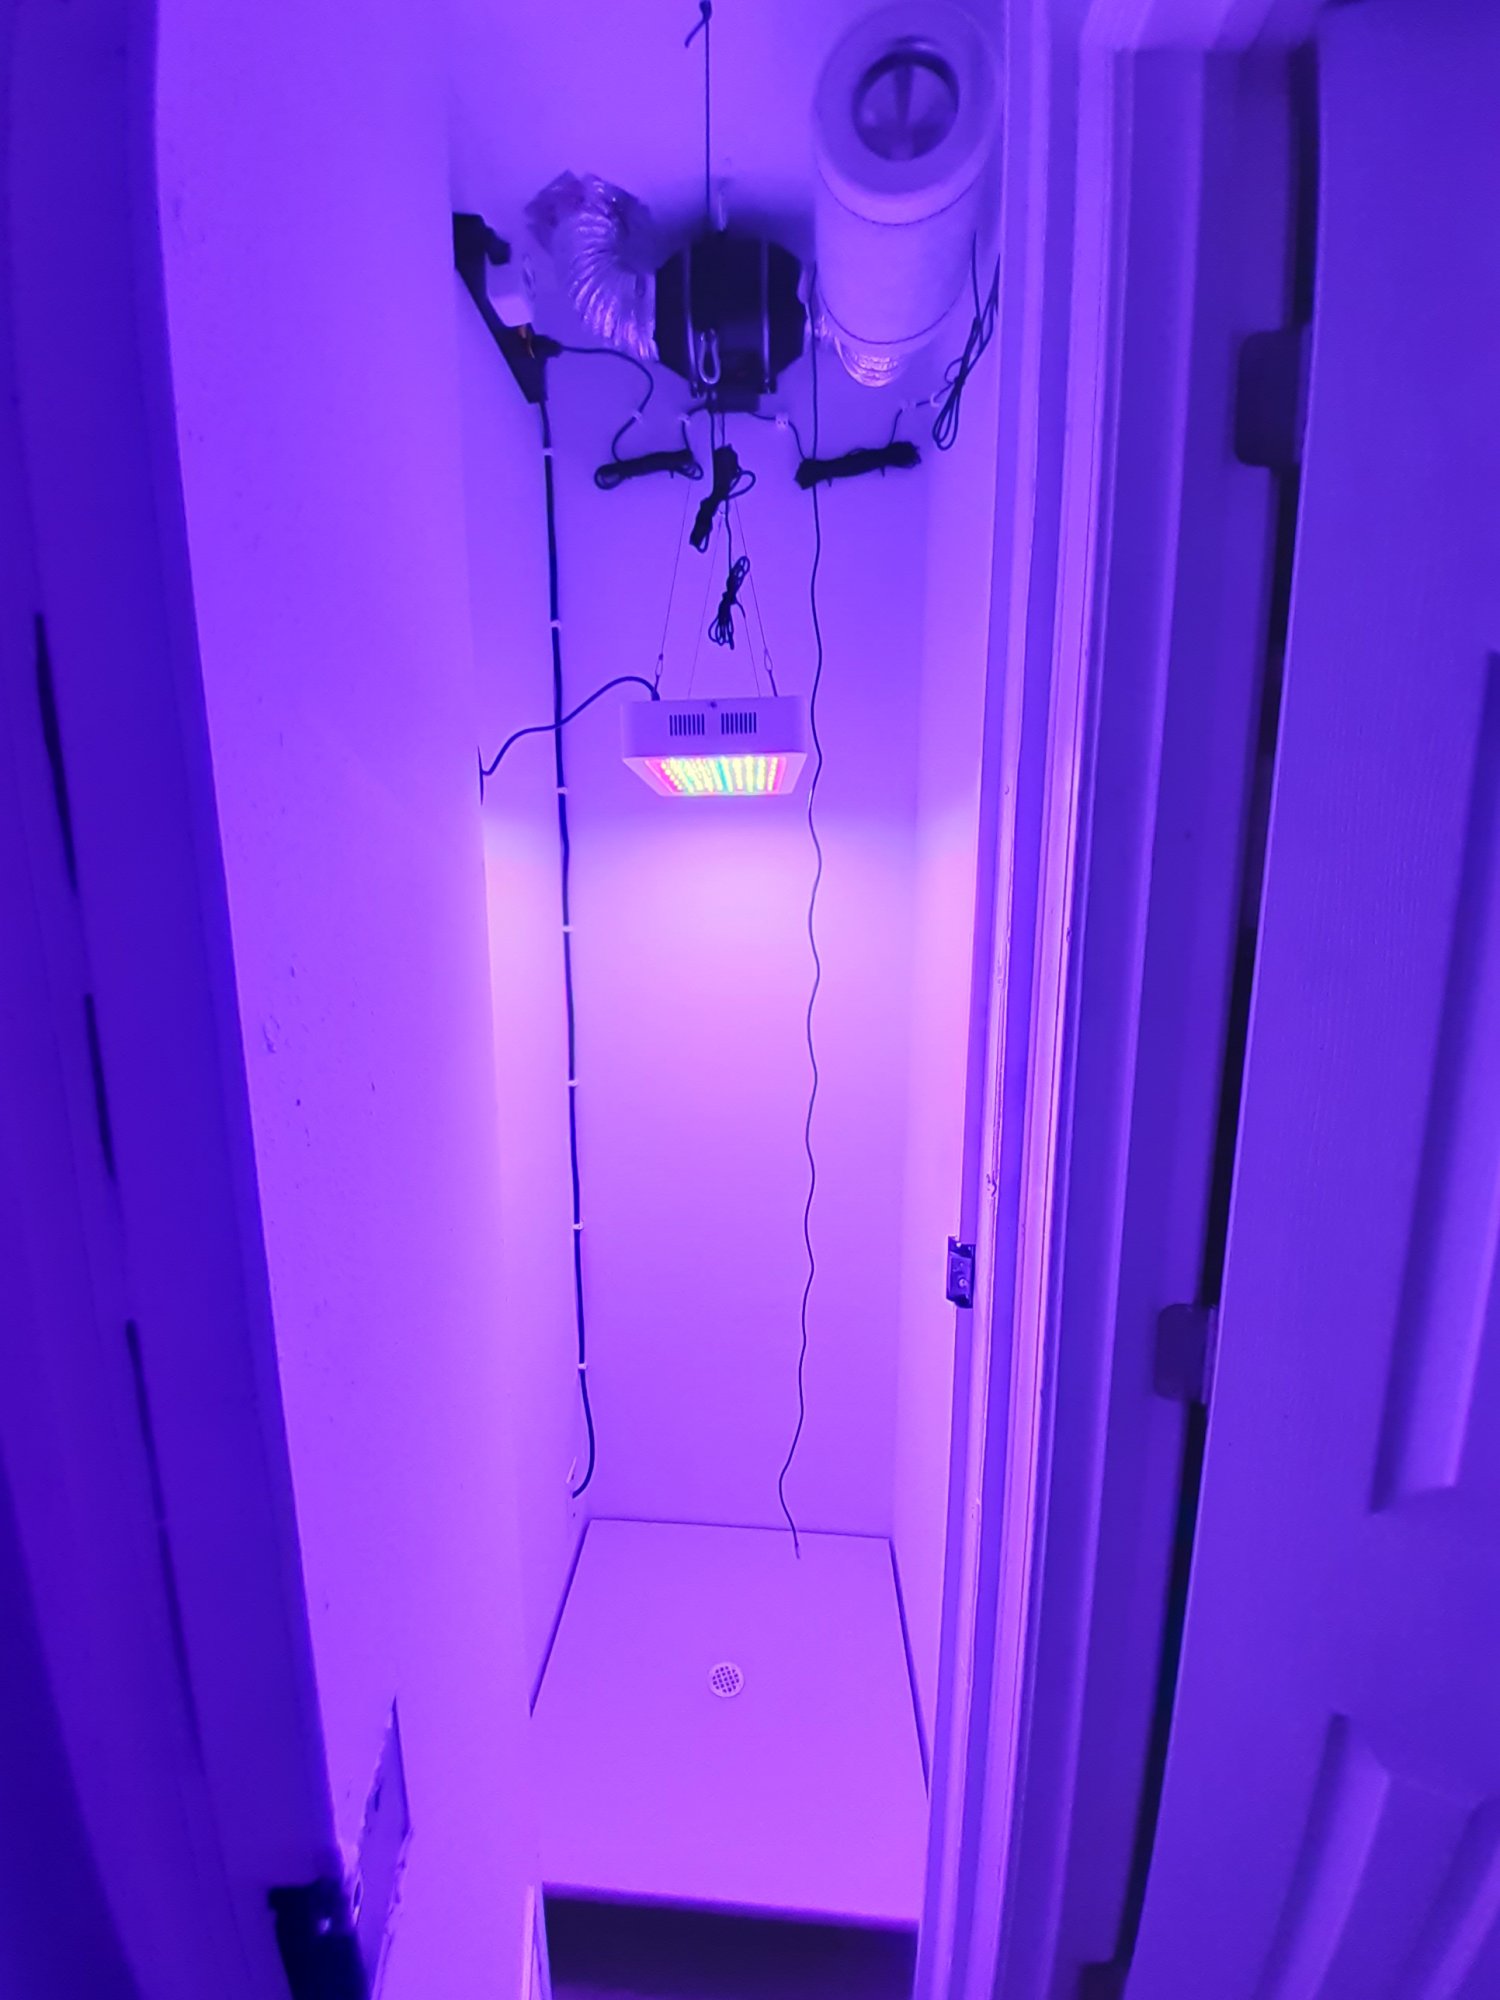 First indoor grow light help plz